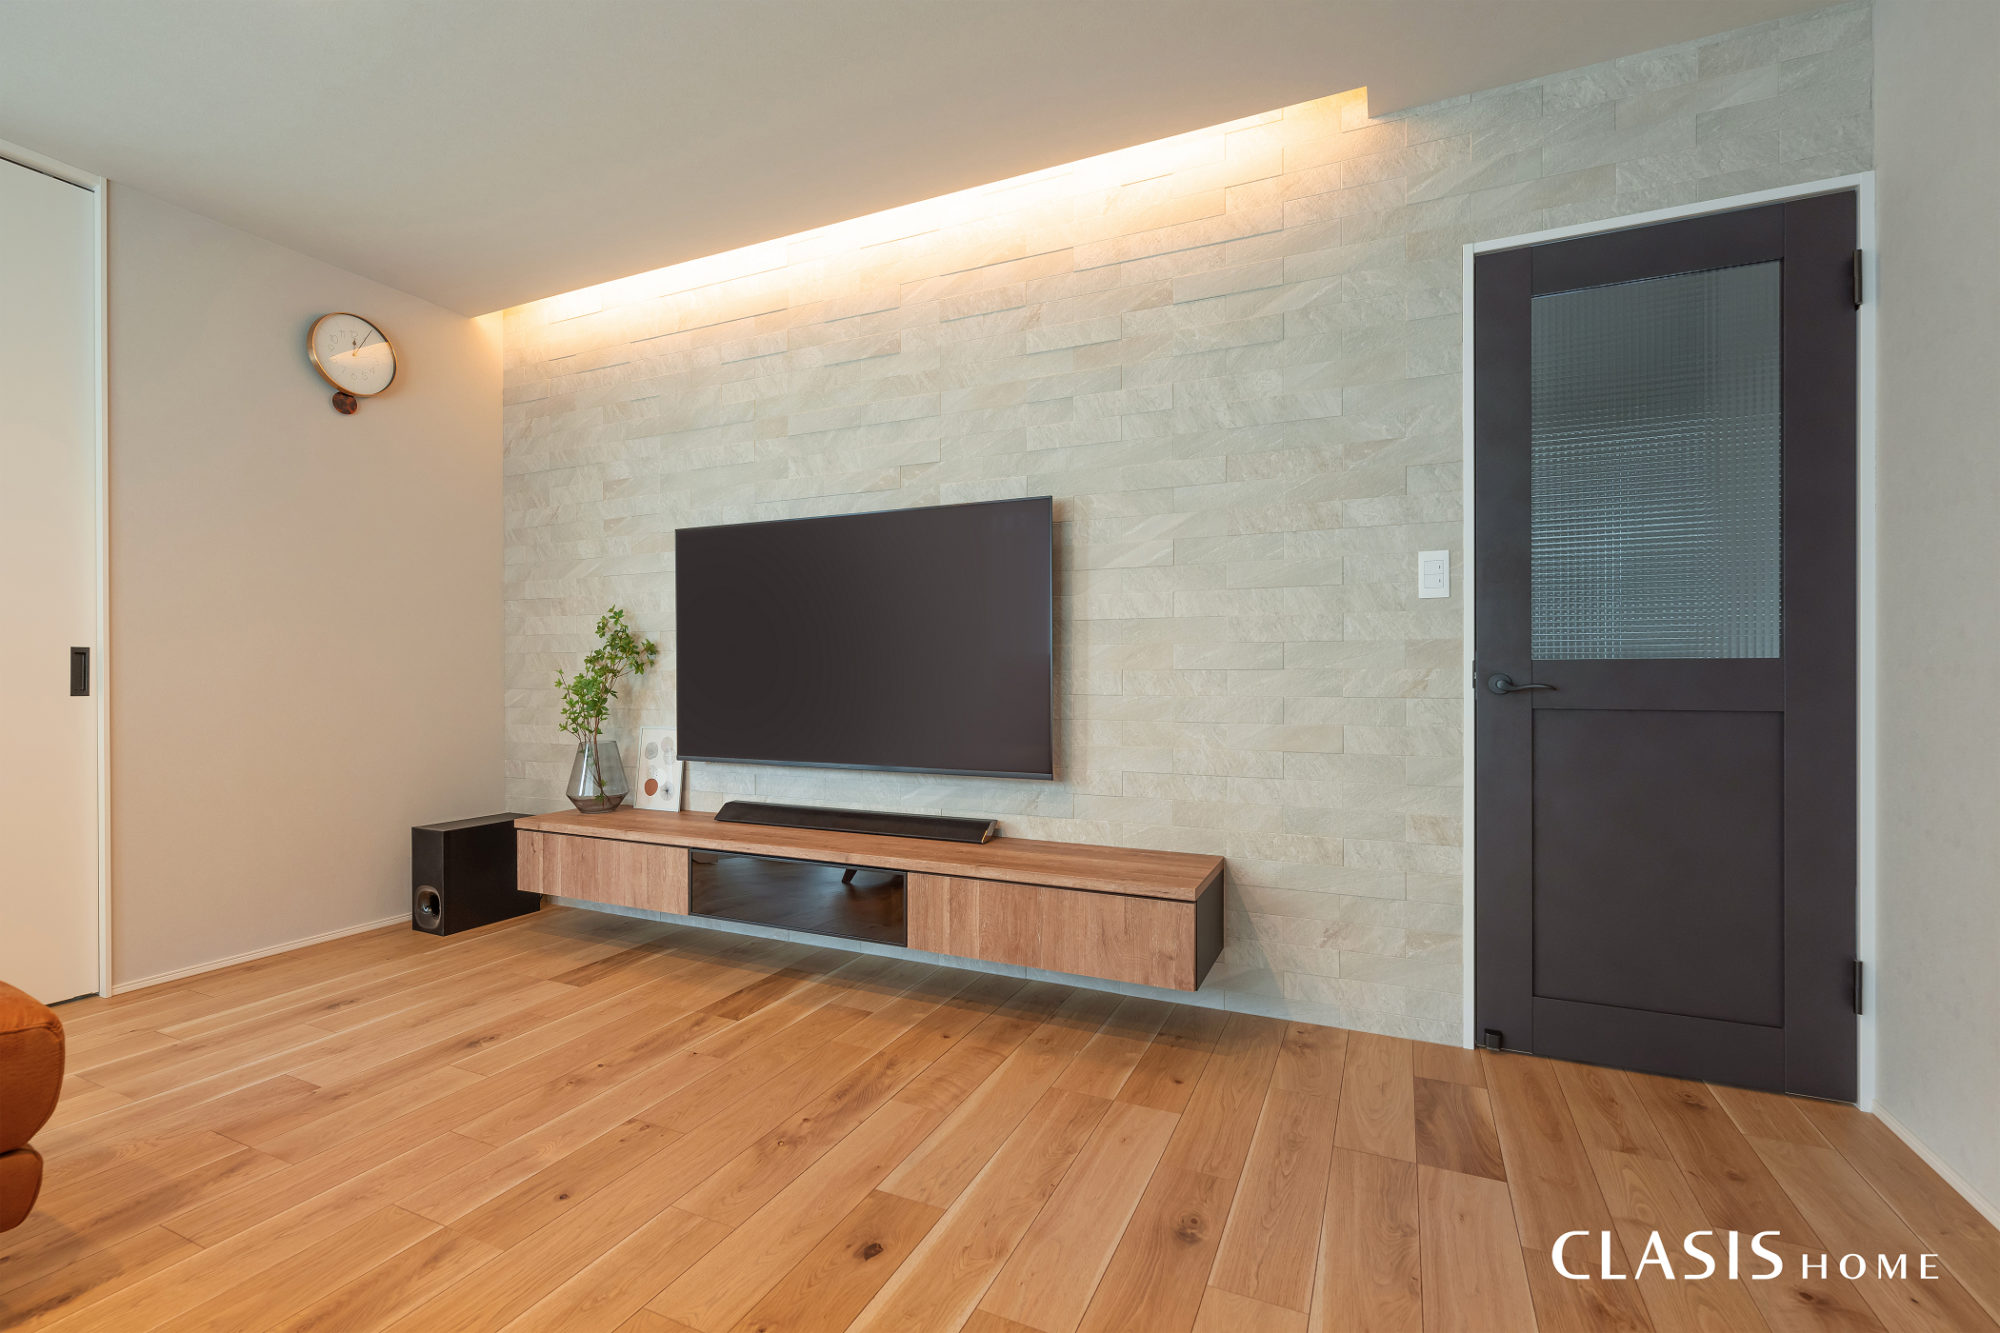 キッチン収納とテレビボードはメーカーを揃え、LDKの統一感を。